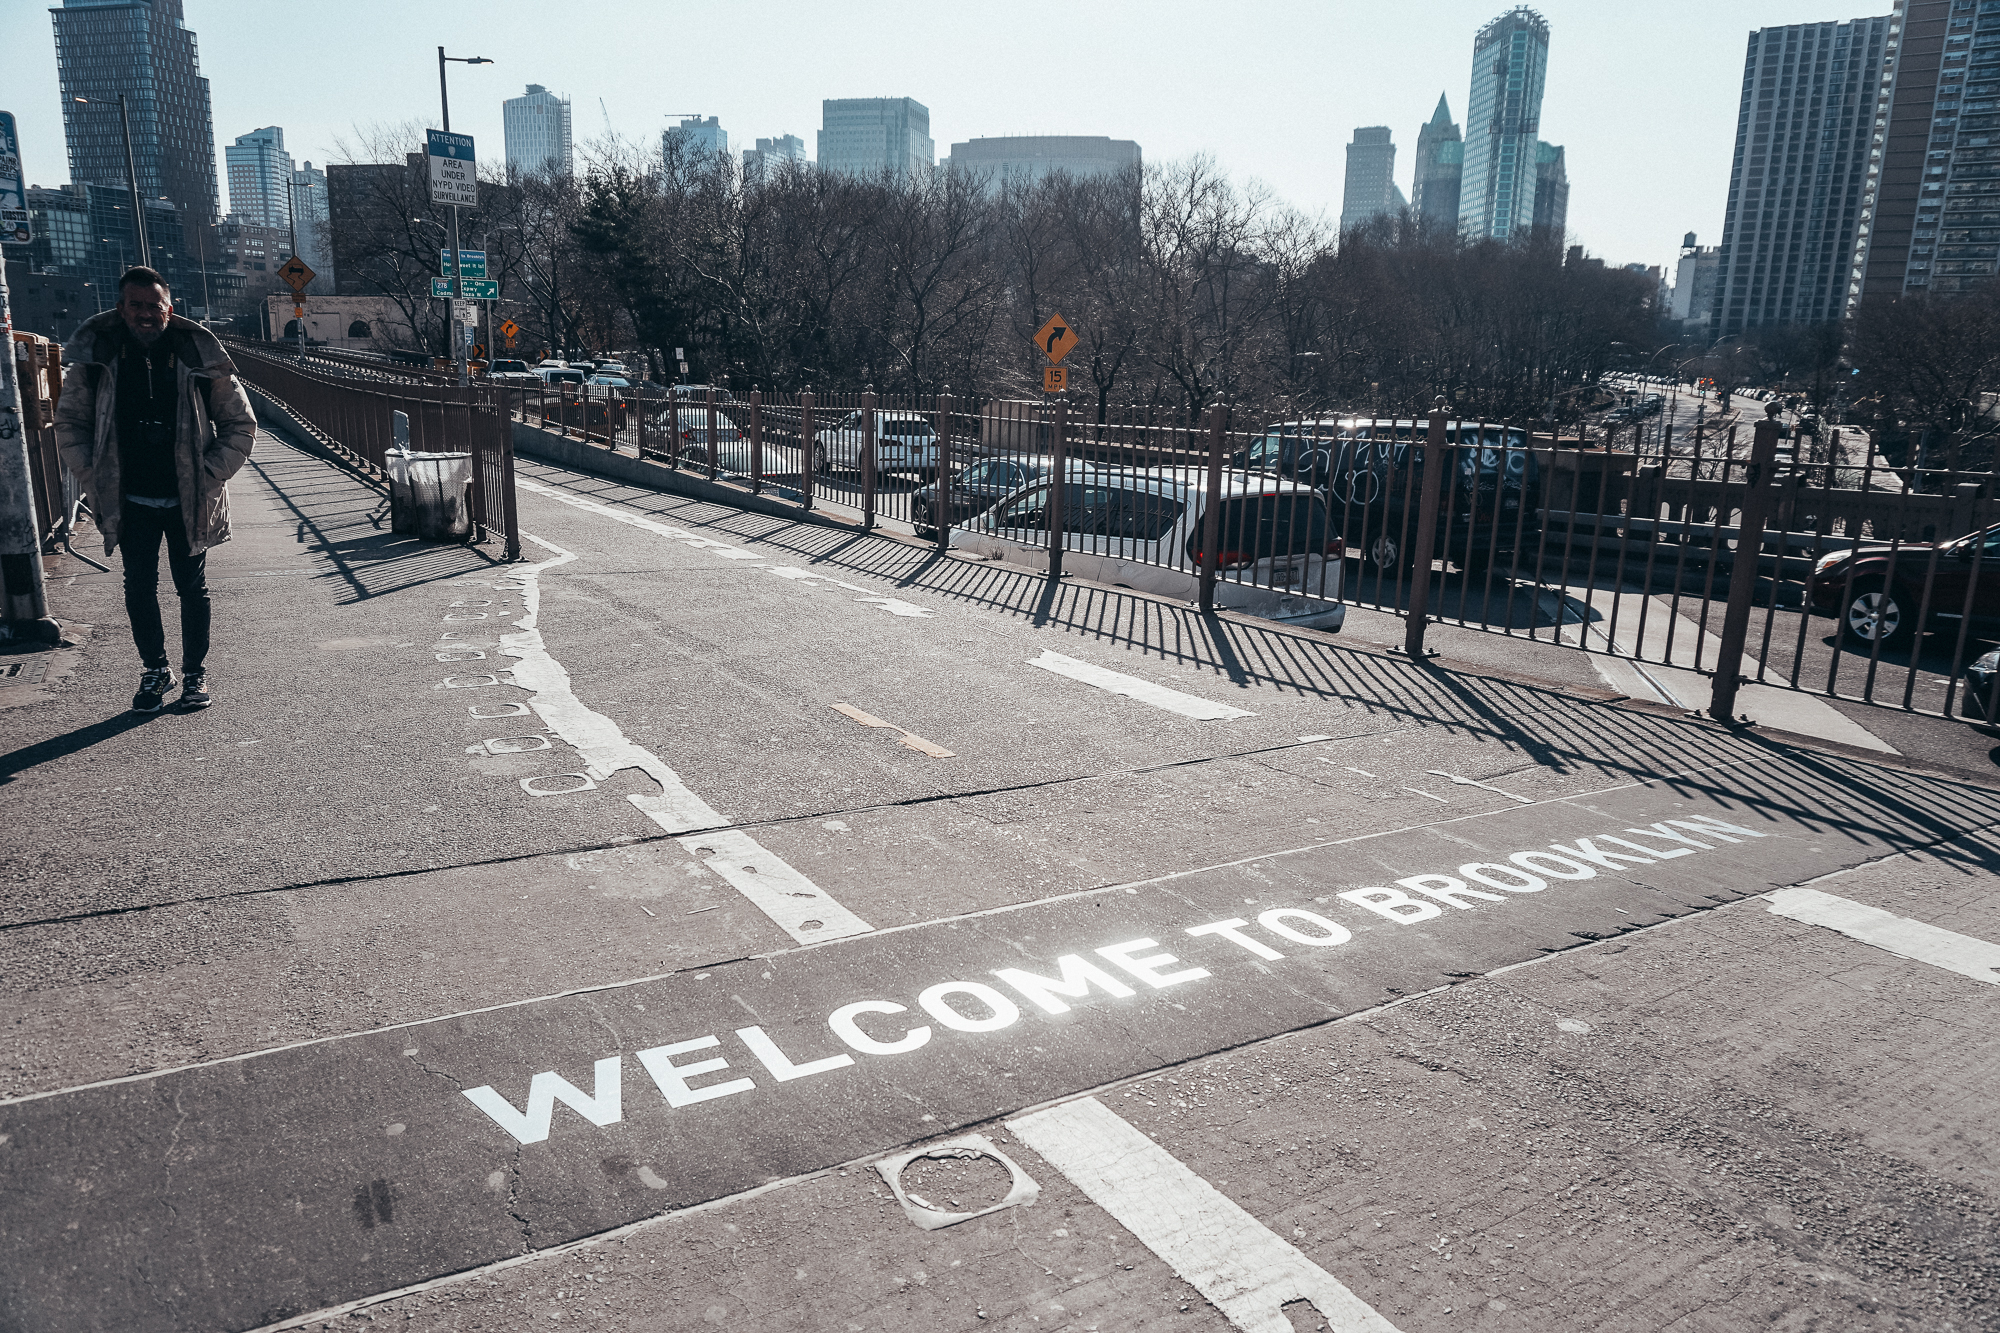 Foto de um escrito que diz "Welcome to Brooklyn" no chão da rua, com os prédios e o céu de Nova York ao fundo